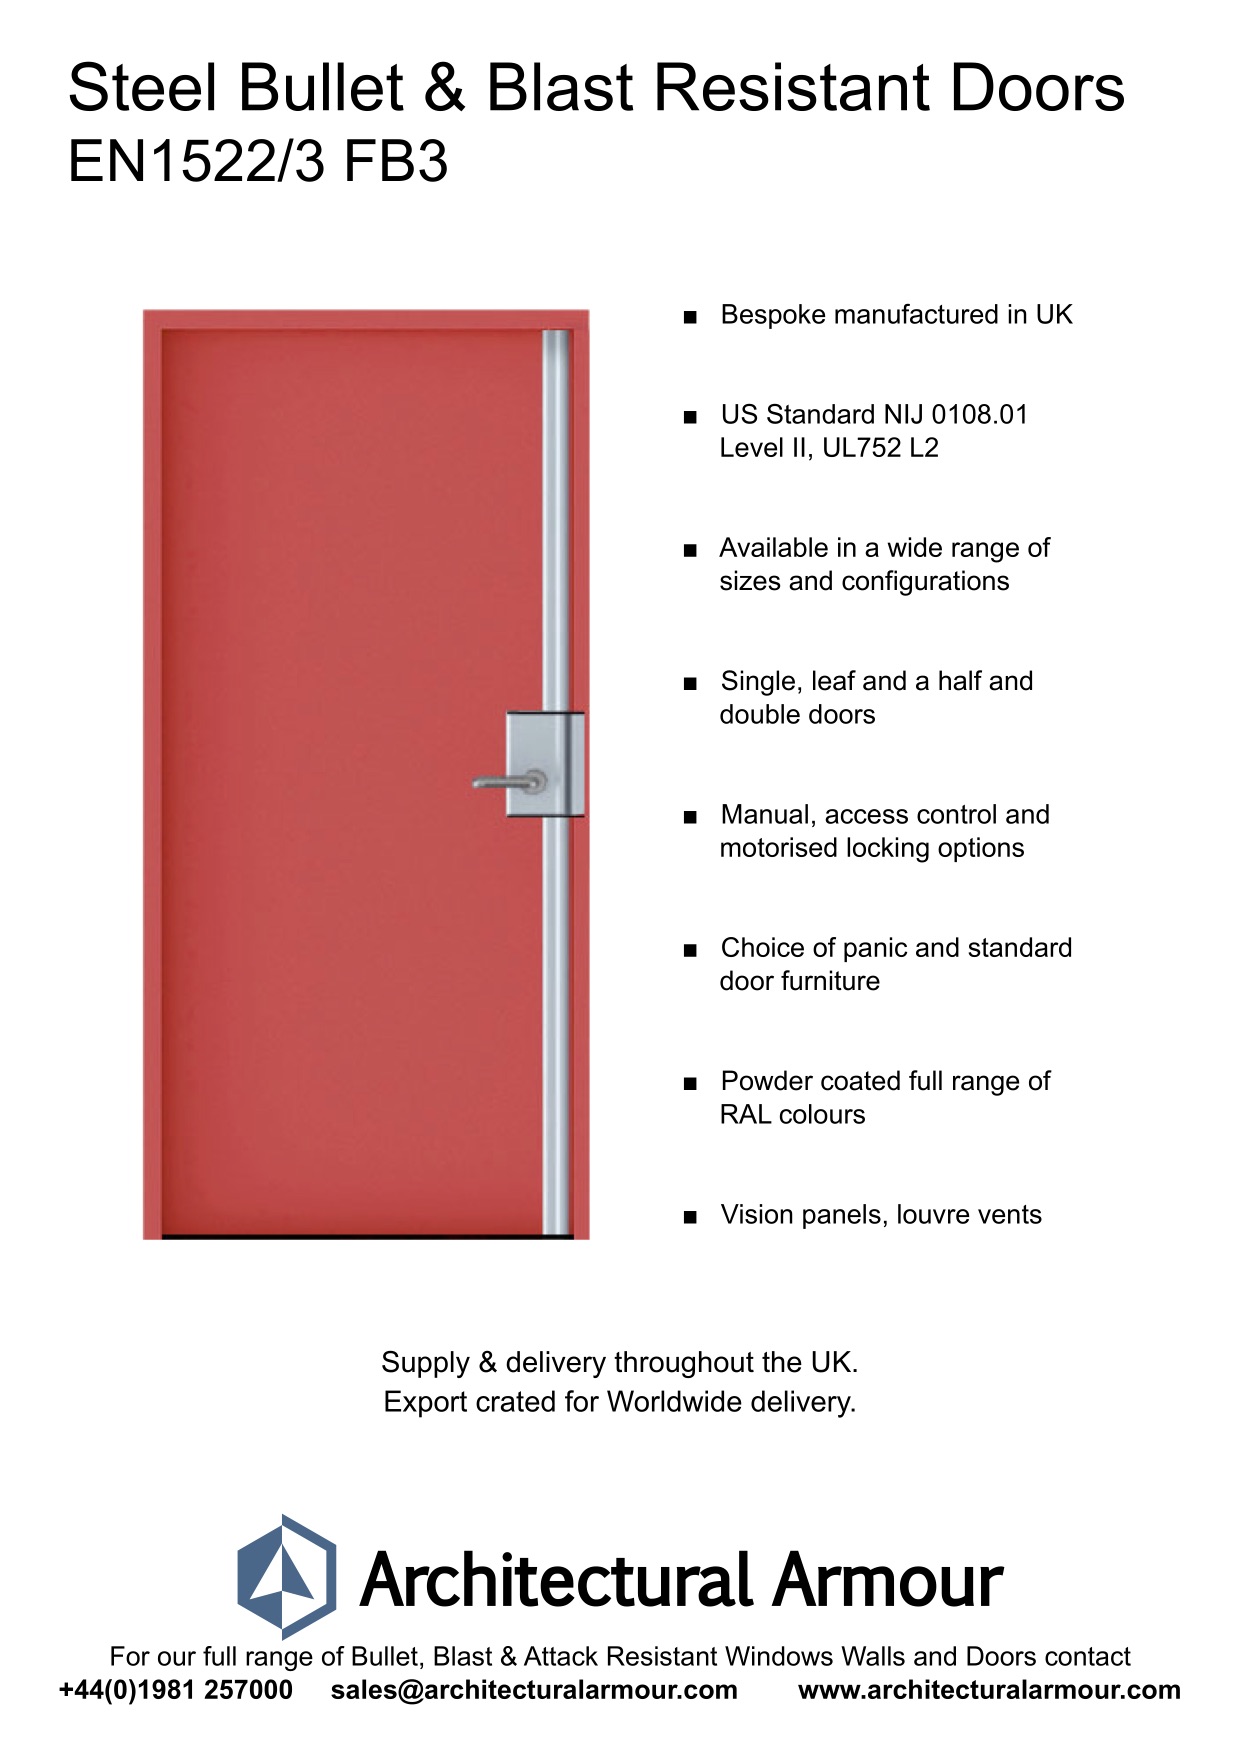 Blast-and-Bullet-Resistant-Steel-Door-UK-EN1522-3-FB3